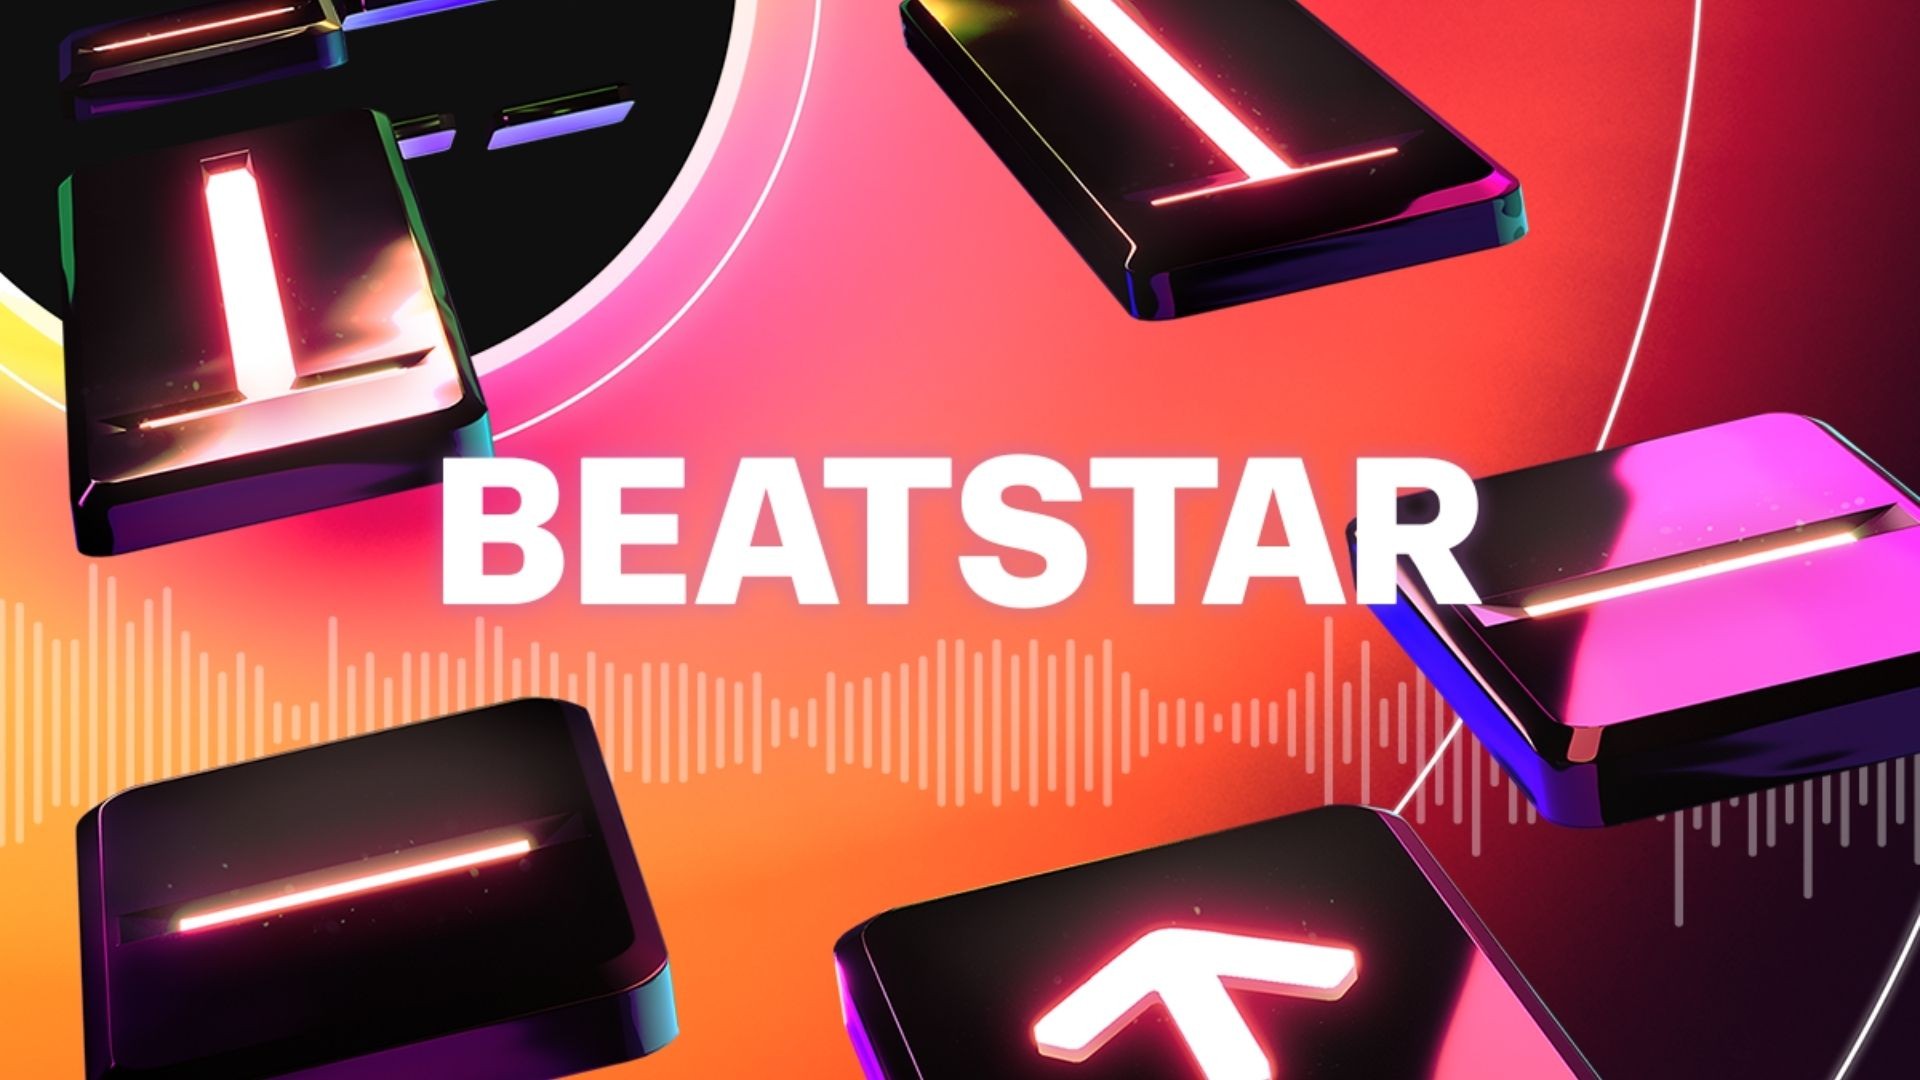 Game Âm Nhạc Beatstar Trả 16 Triệu Đô Tiền Bản Quyền Cho Các Ca Khúc Xuất Hiện Trong Game